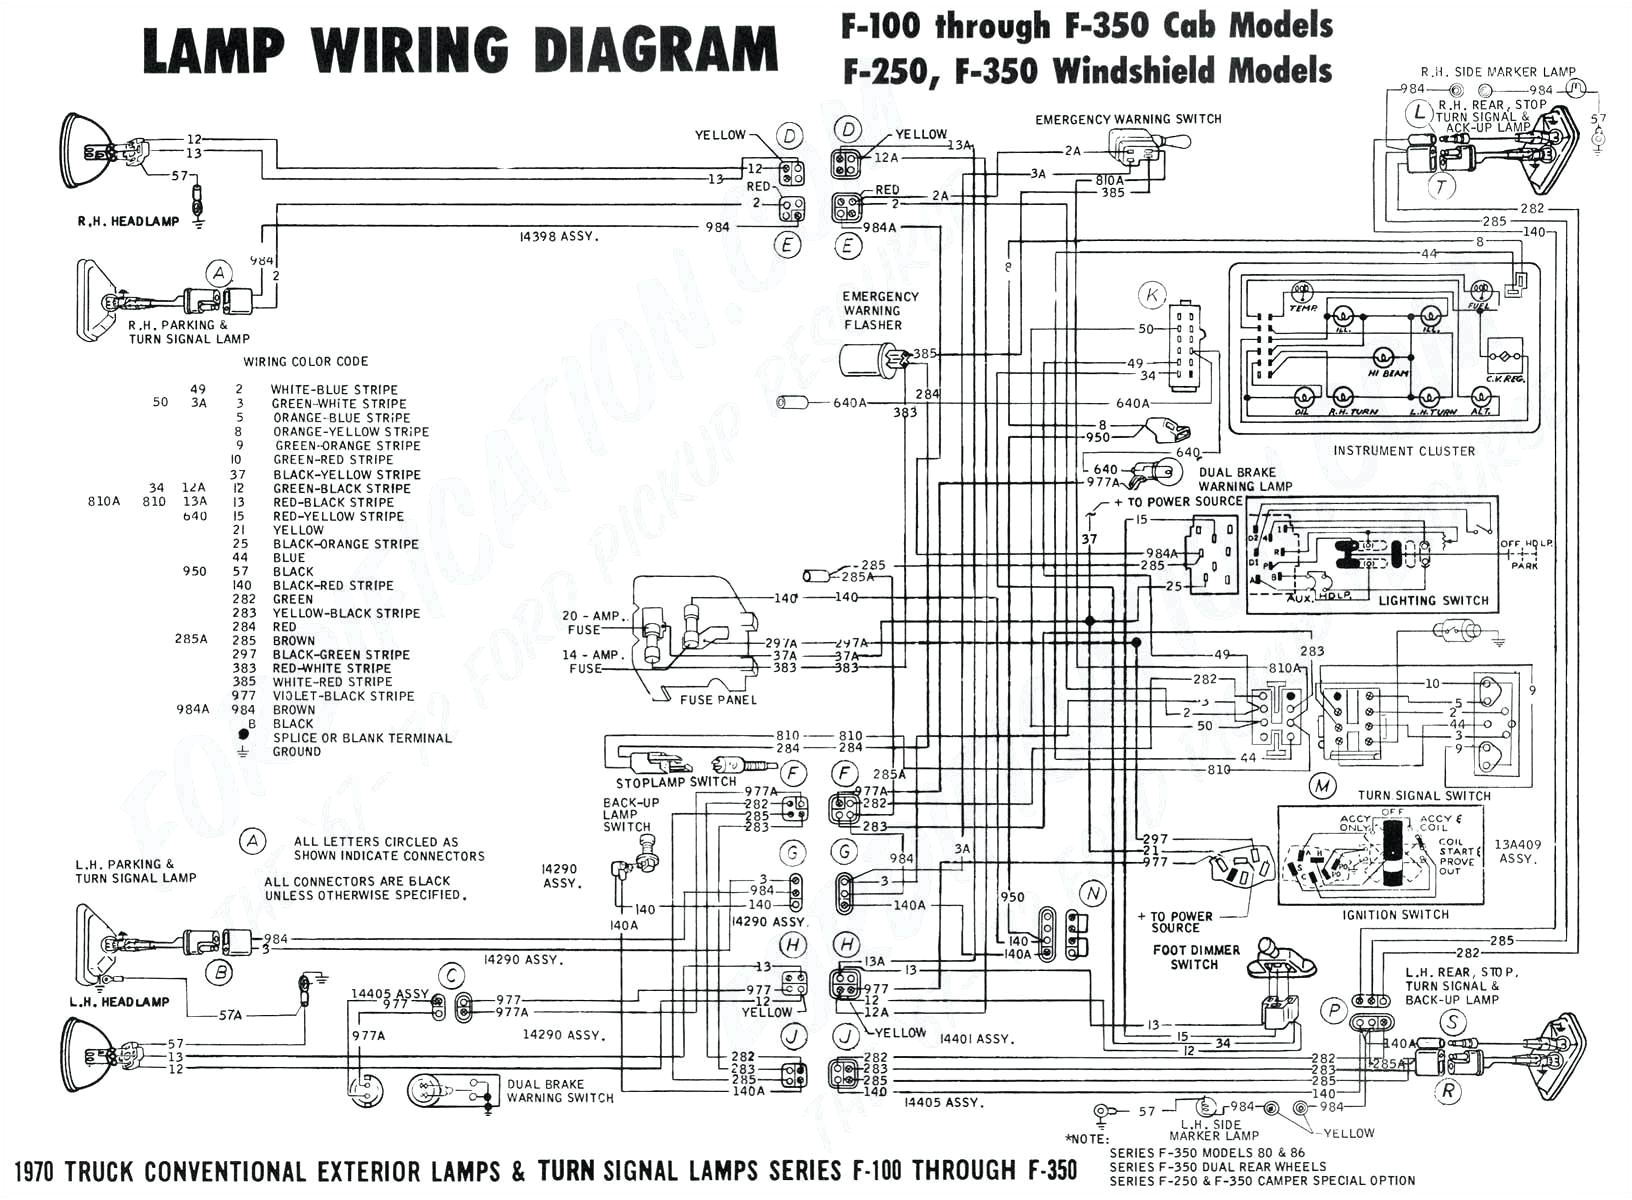 garmin 196 gps wiring diagram wiring diagram basicinilex gps wiring diagram new wiring diagram2001 chevy s10